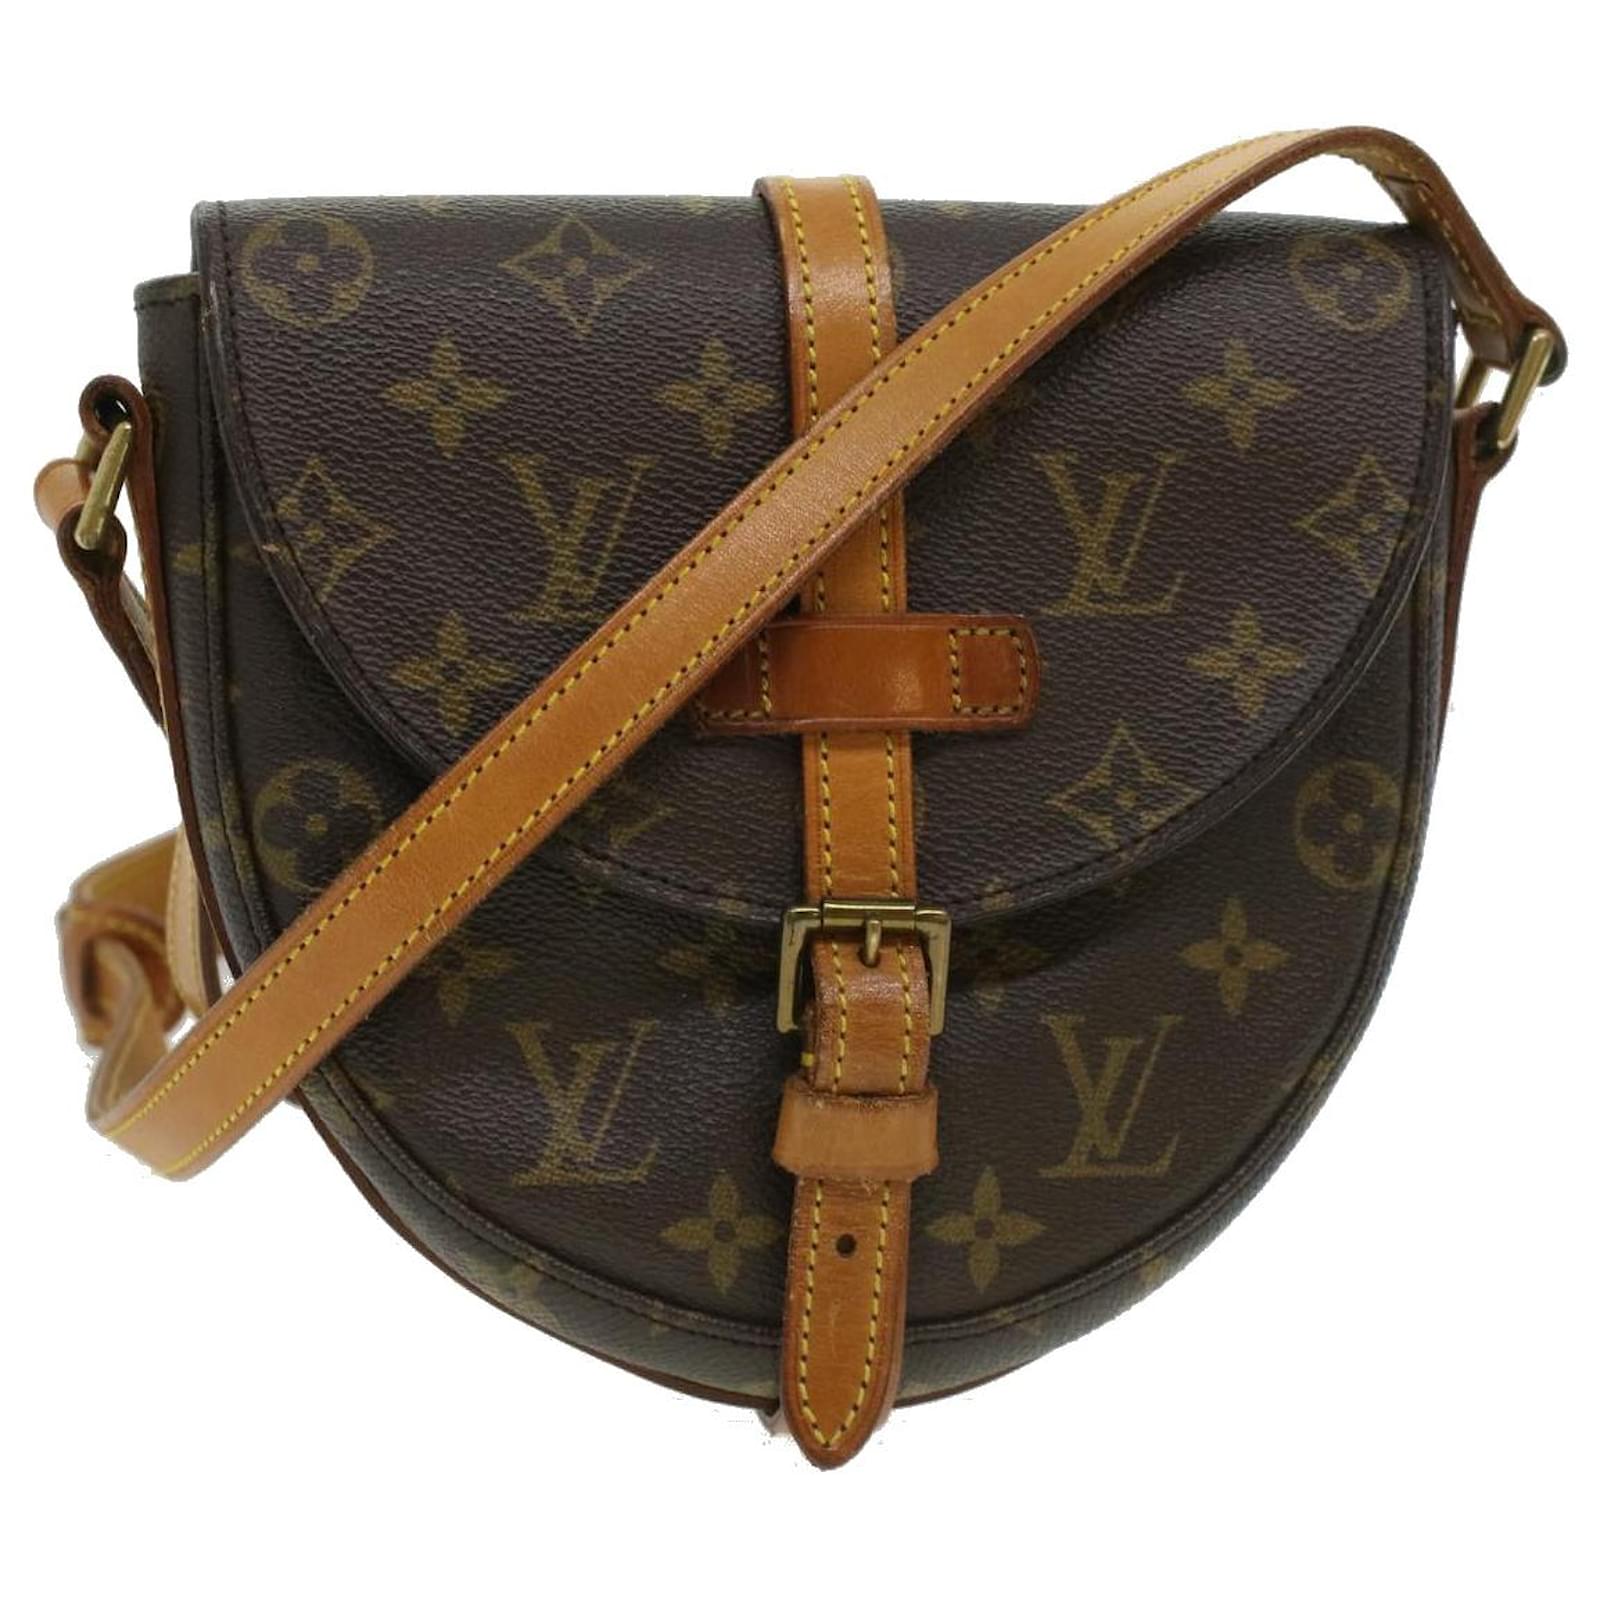 Louis Vuitton 'Chantilly' Shoulder Bag in Monogram Canvas - Louis Vuitton